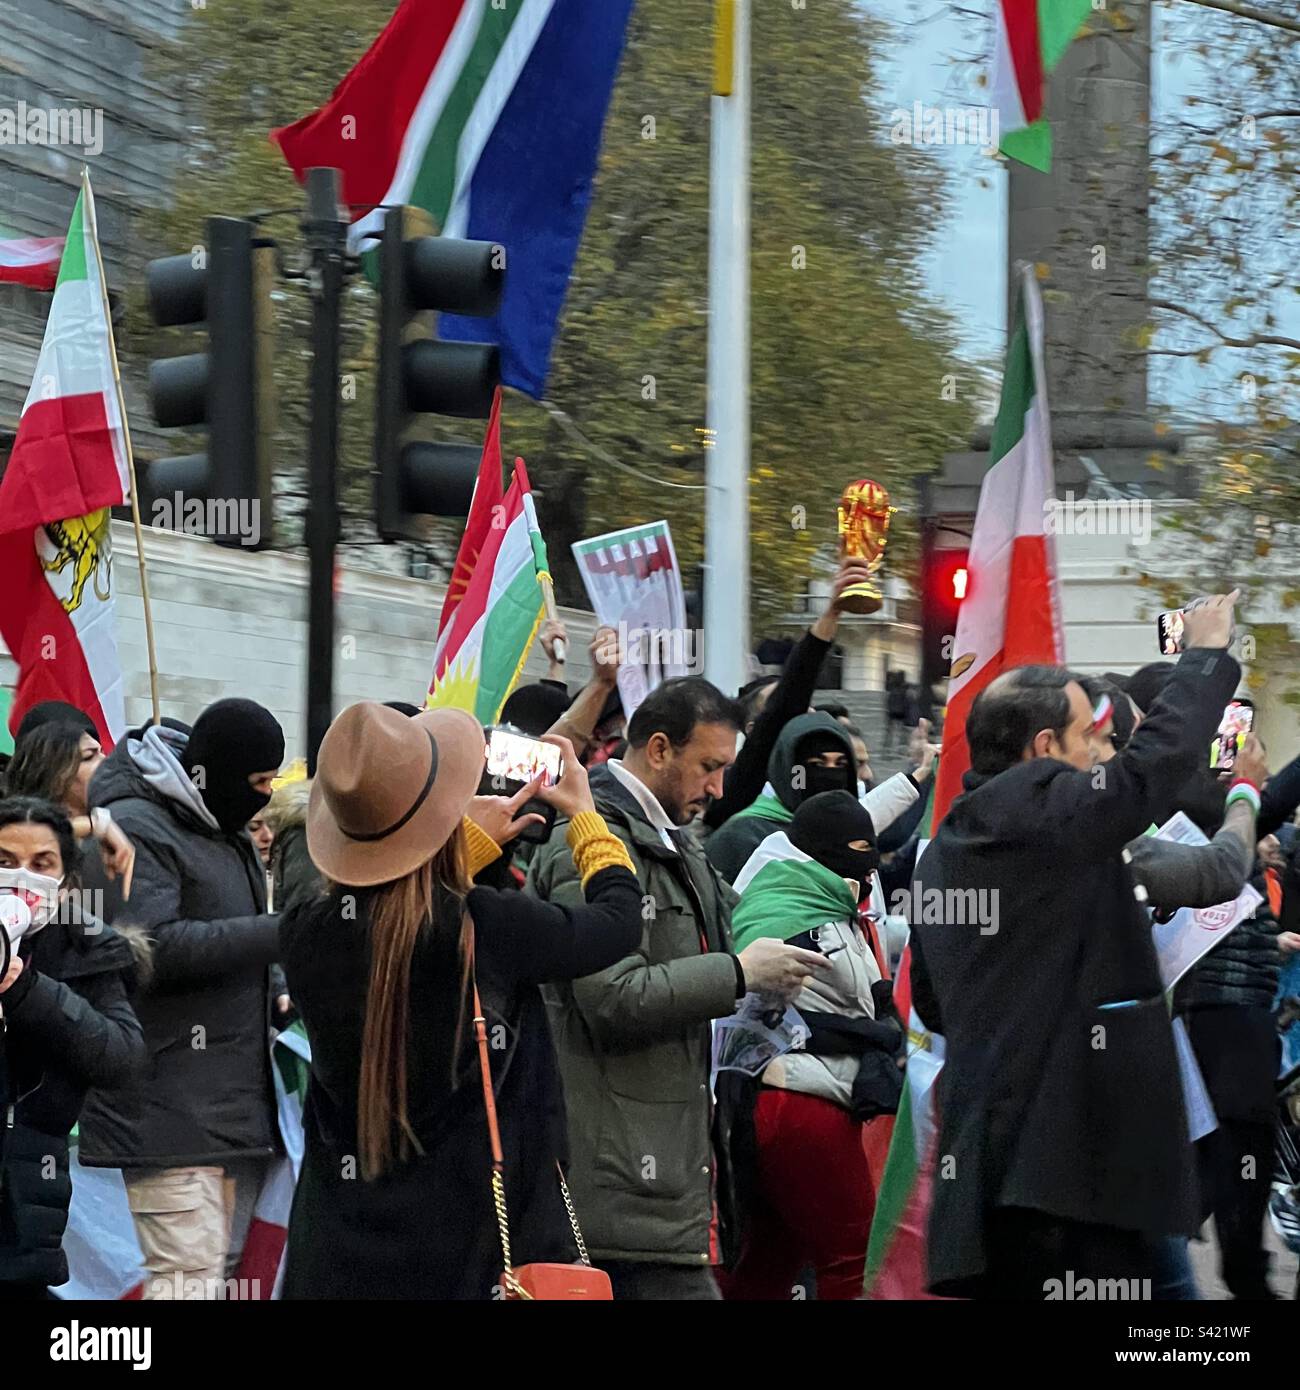 Femmes. La vie. Liberté - manifestation en faveur des droits des femmes en Iran - Londres, 26 novembre 2022 Banque D'Images